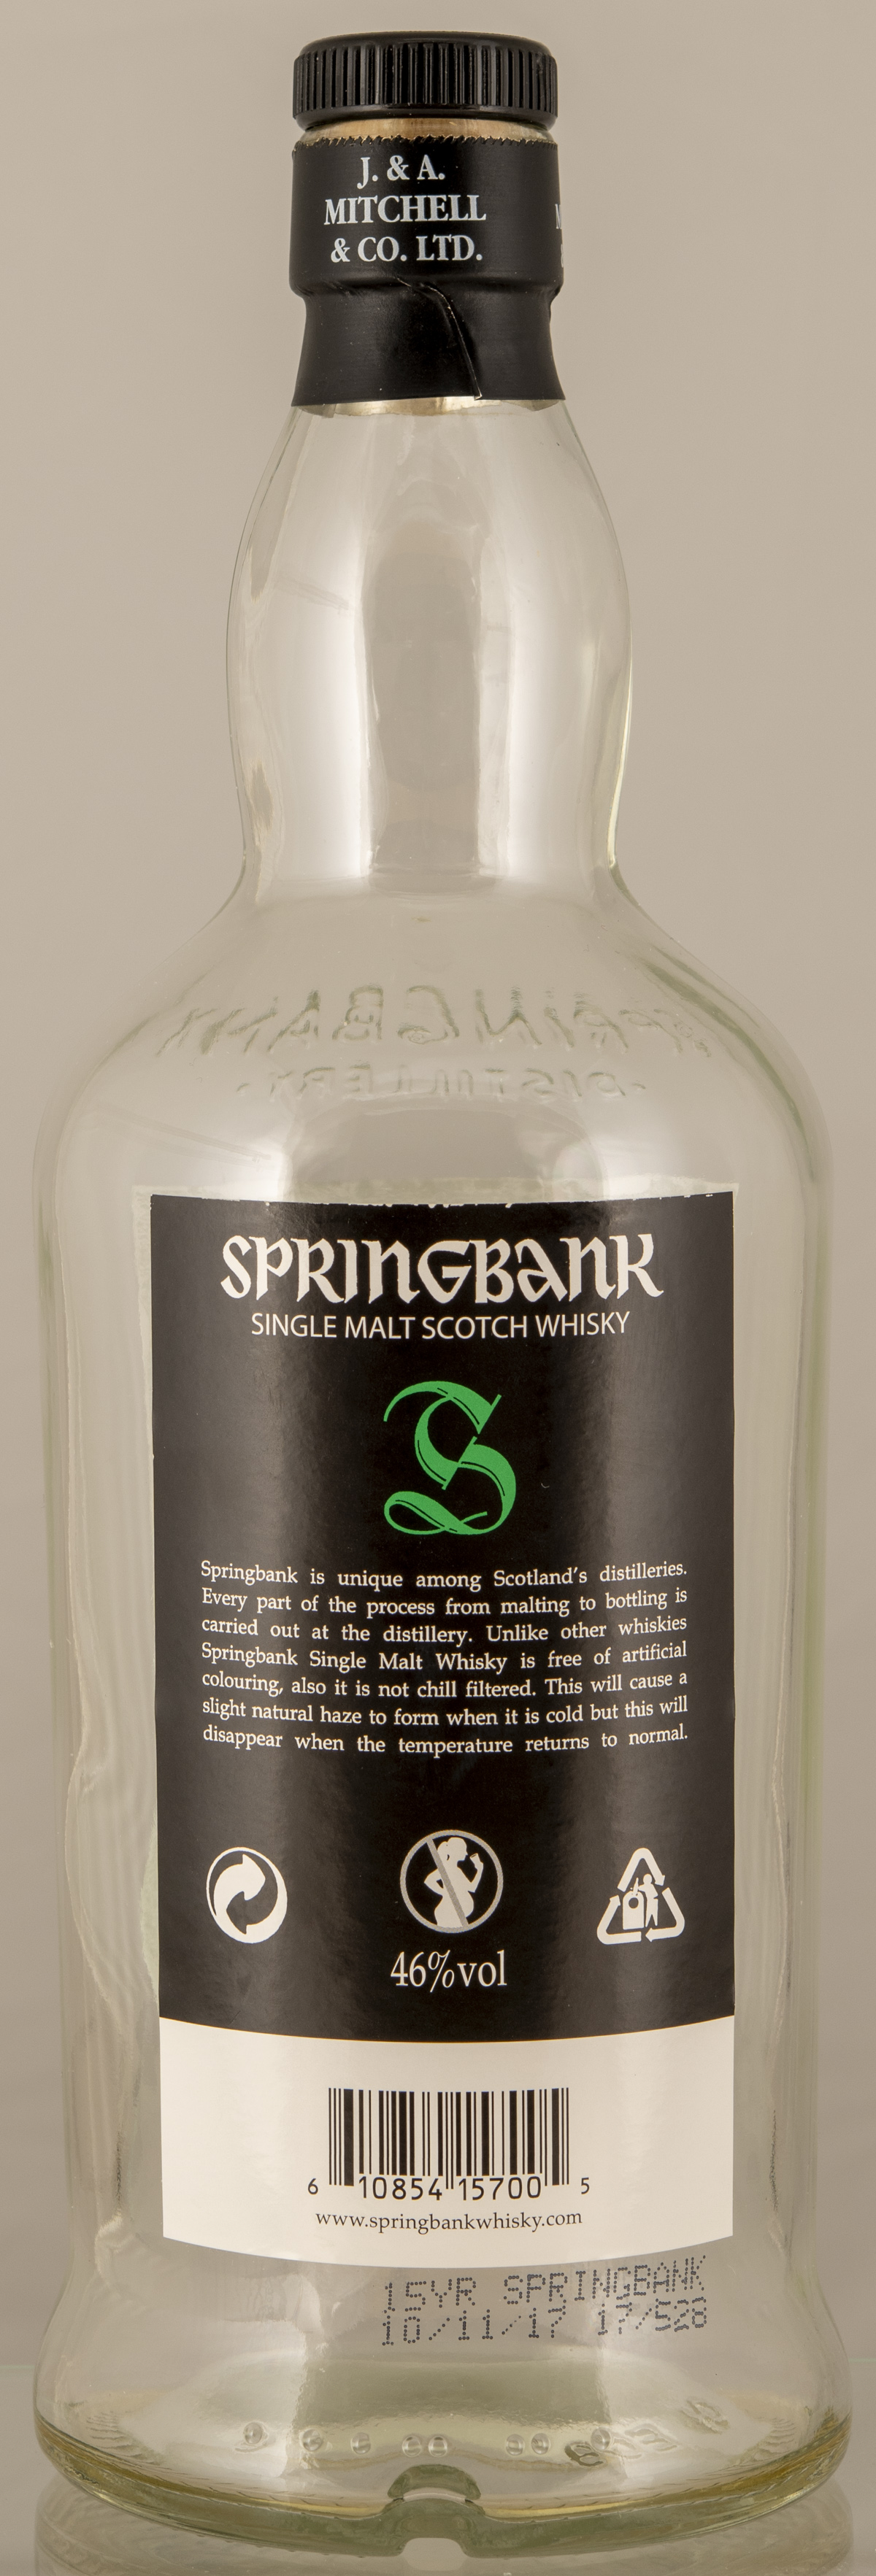 Billede: D85_8398 - Springbank 15 - bottle back.jpg